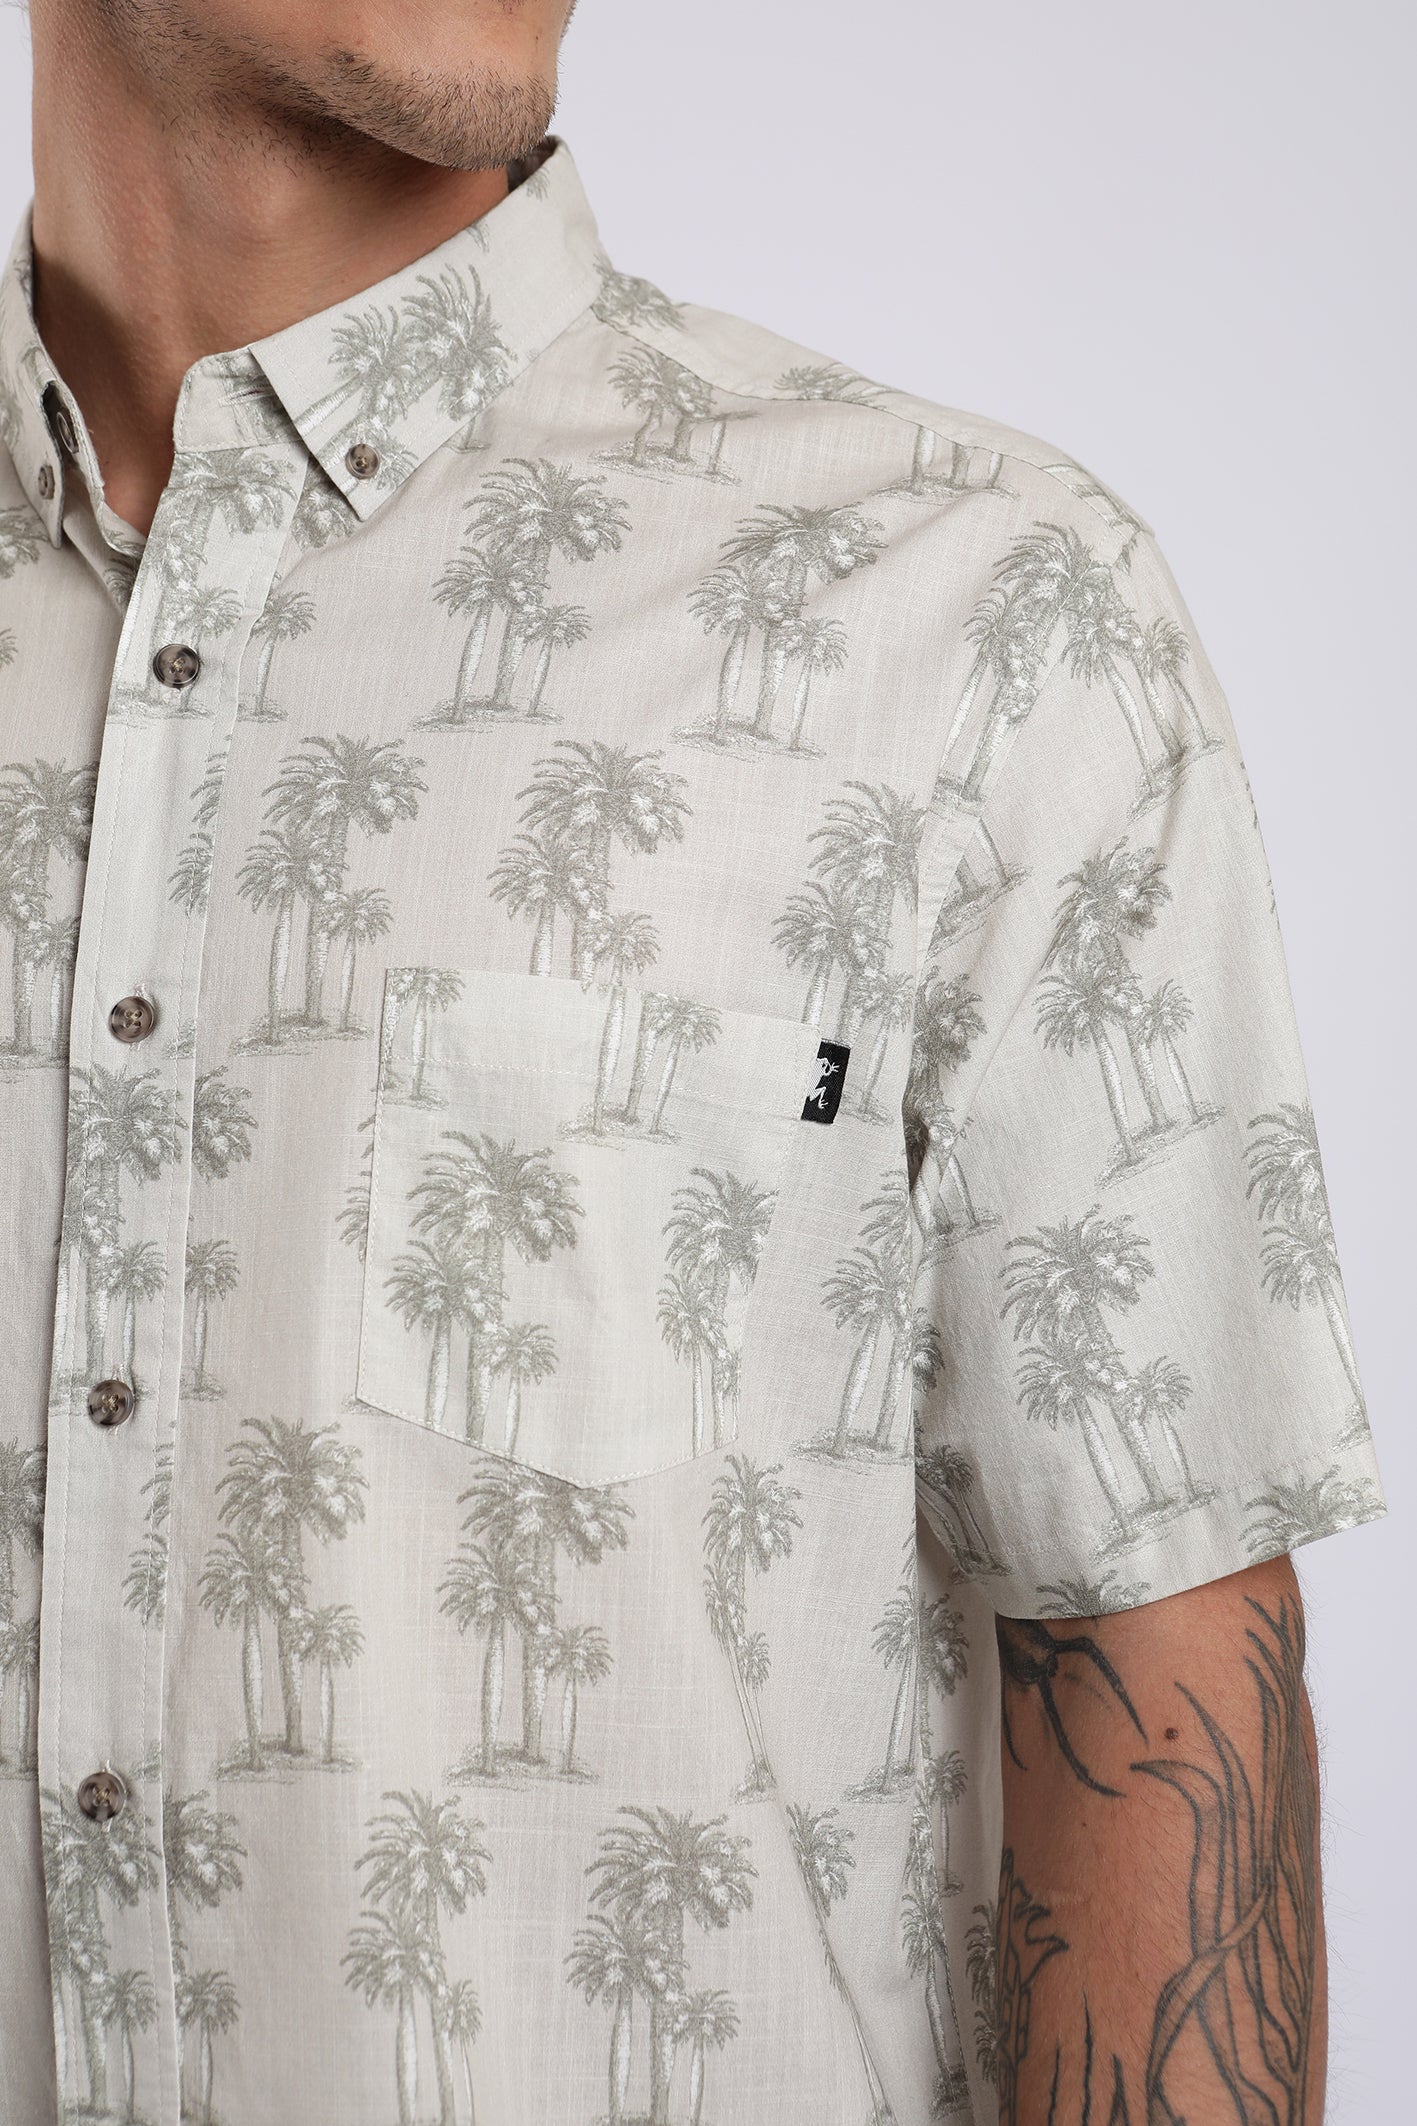 Camisa manga corta Palms sepia - Algodón orgánico